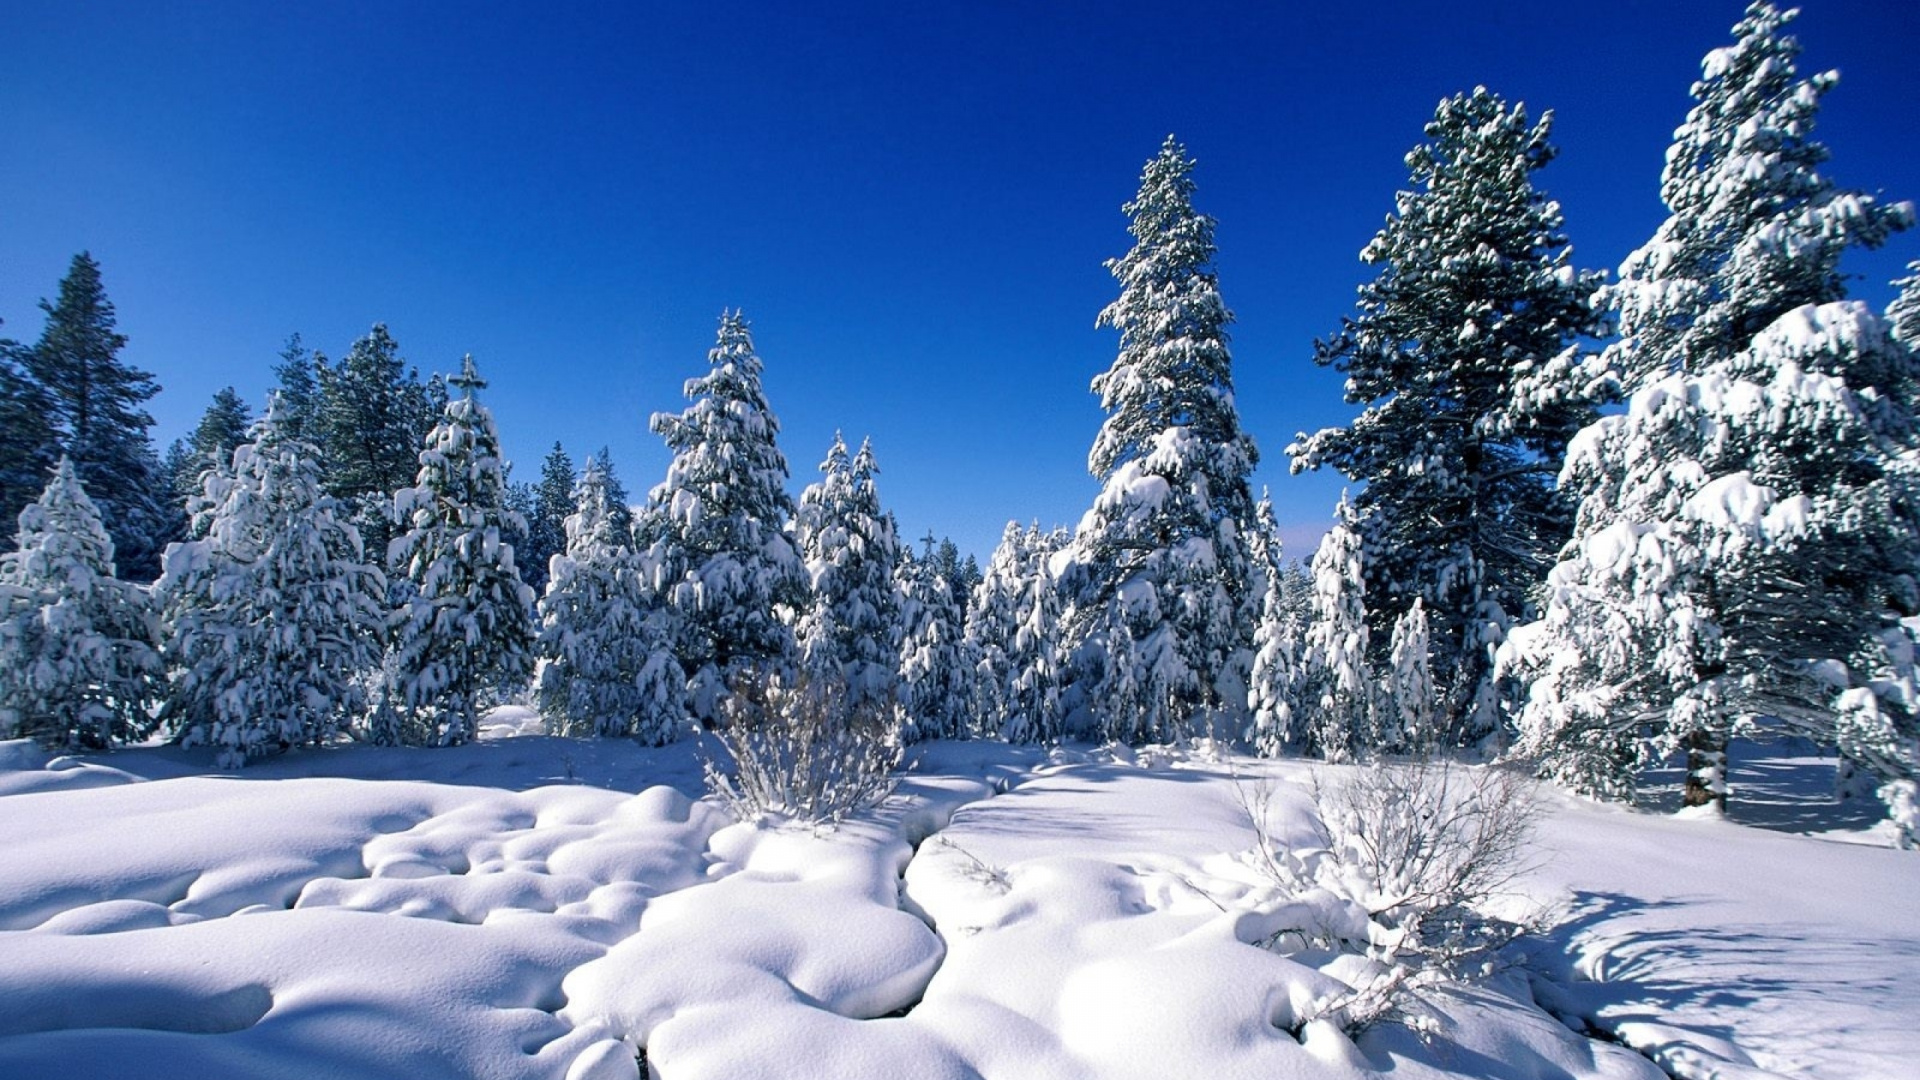 Schneebedeckte Bäume Unter Blauem Himmel Tagsüber. Wallpaper in 1920x1080 Resolution